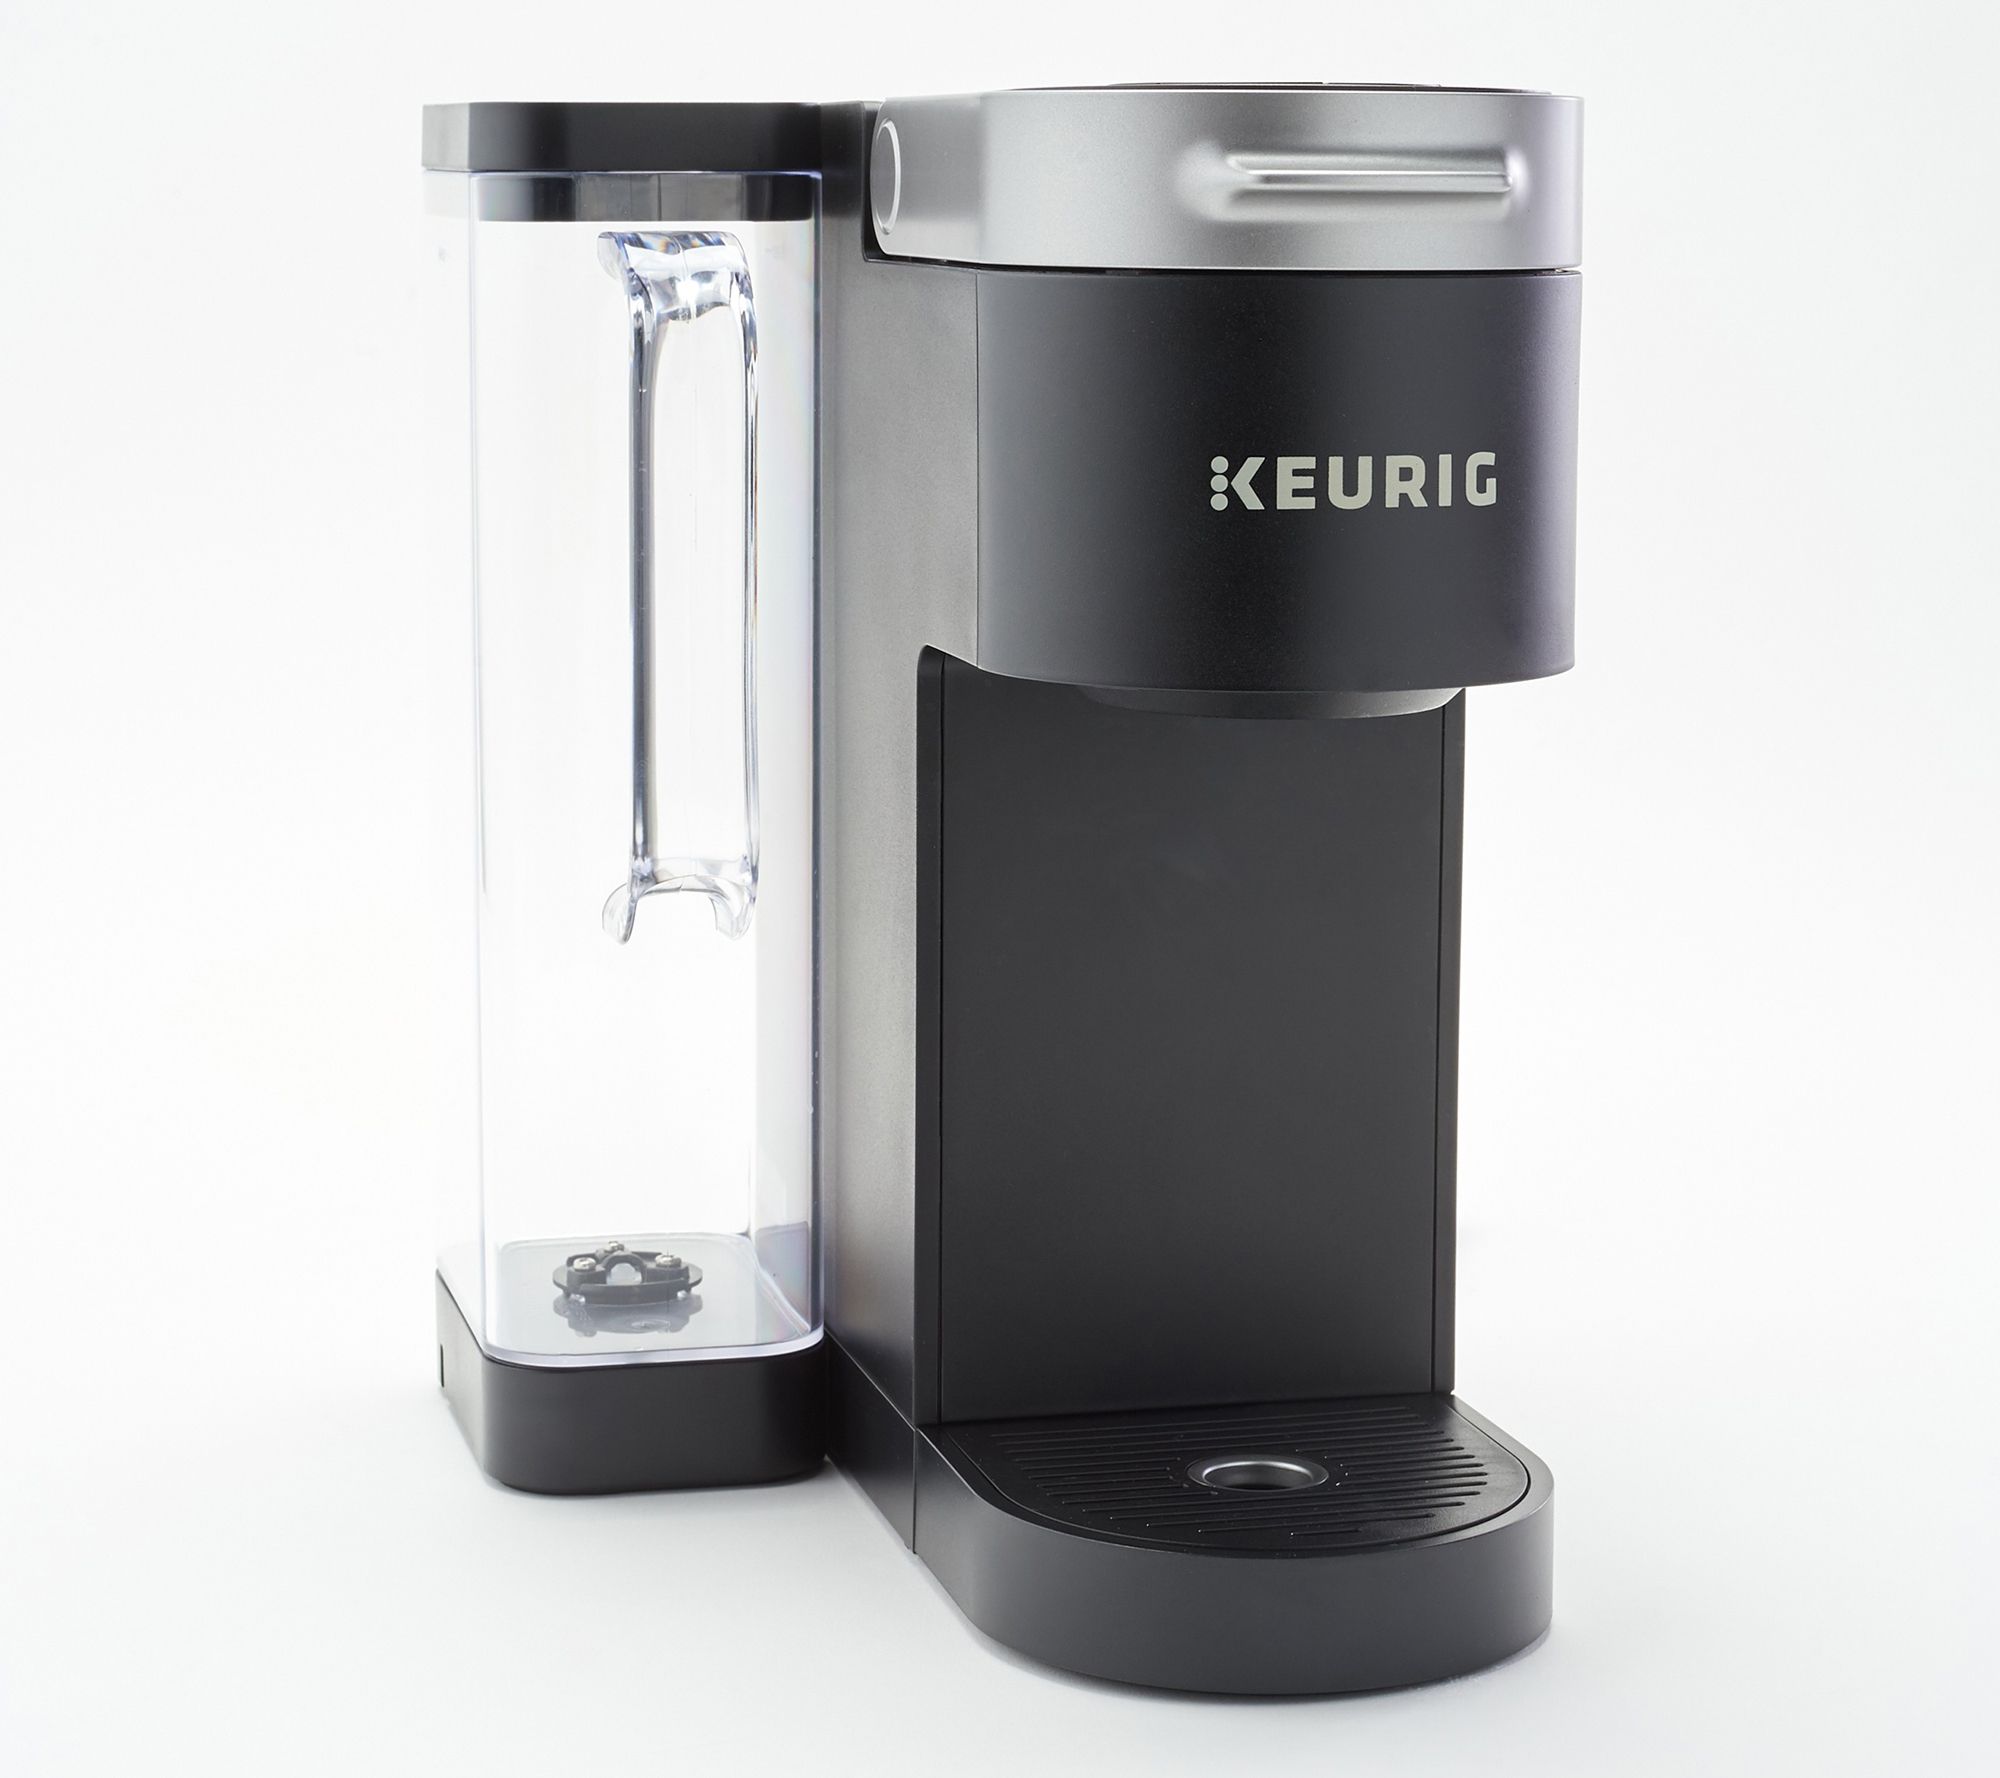 Universal Refillable K supreme KCups Keurig filter Reusable K Cups for Keurig Supreme and K Supreme Plus Coffee Makers Reusable kcup reusable filter by Delibru 4 PACK